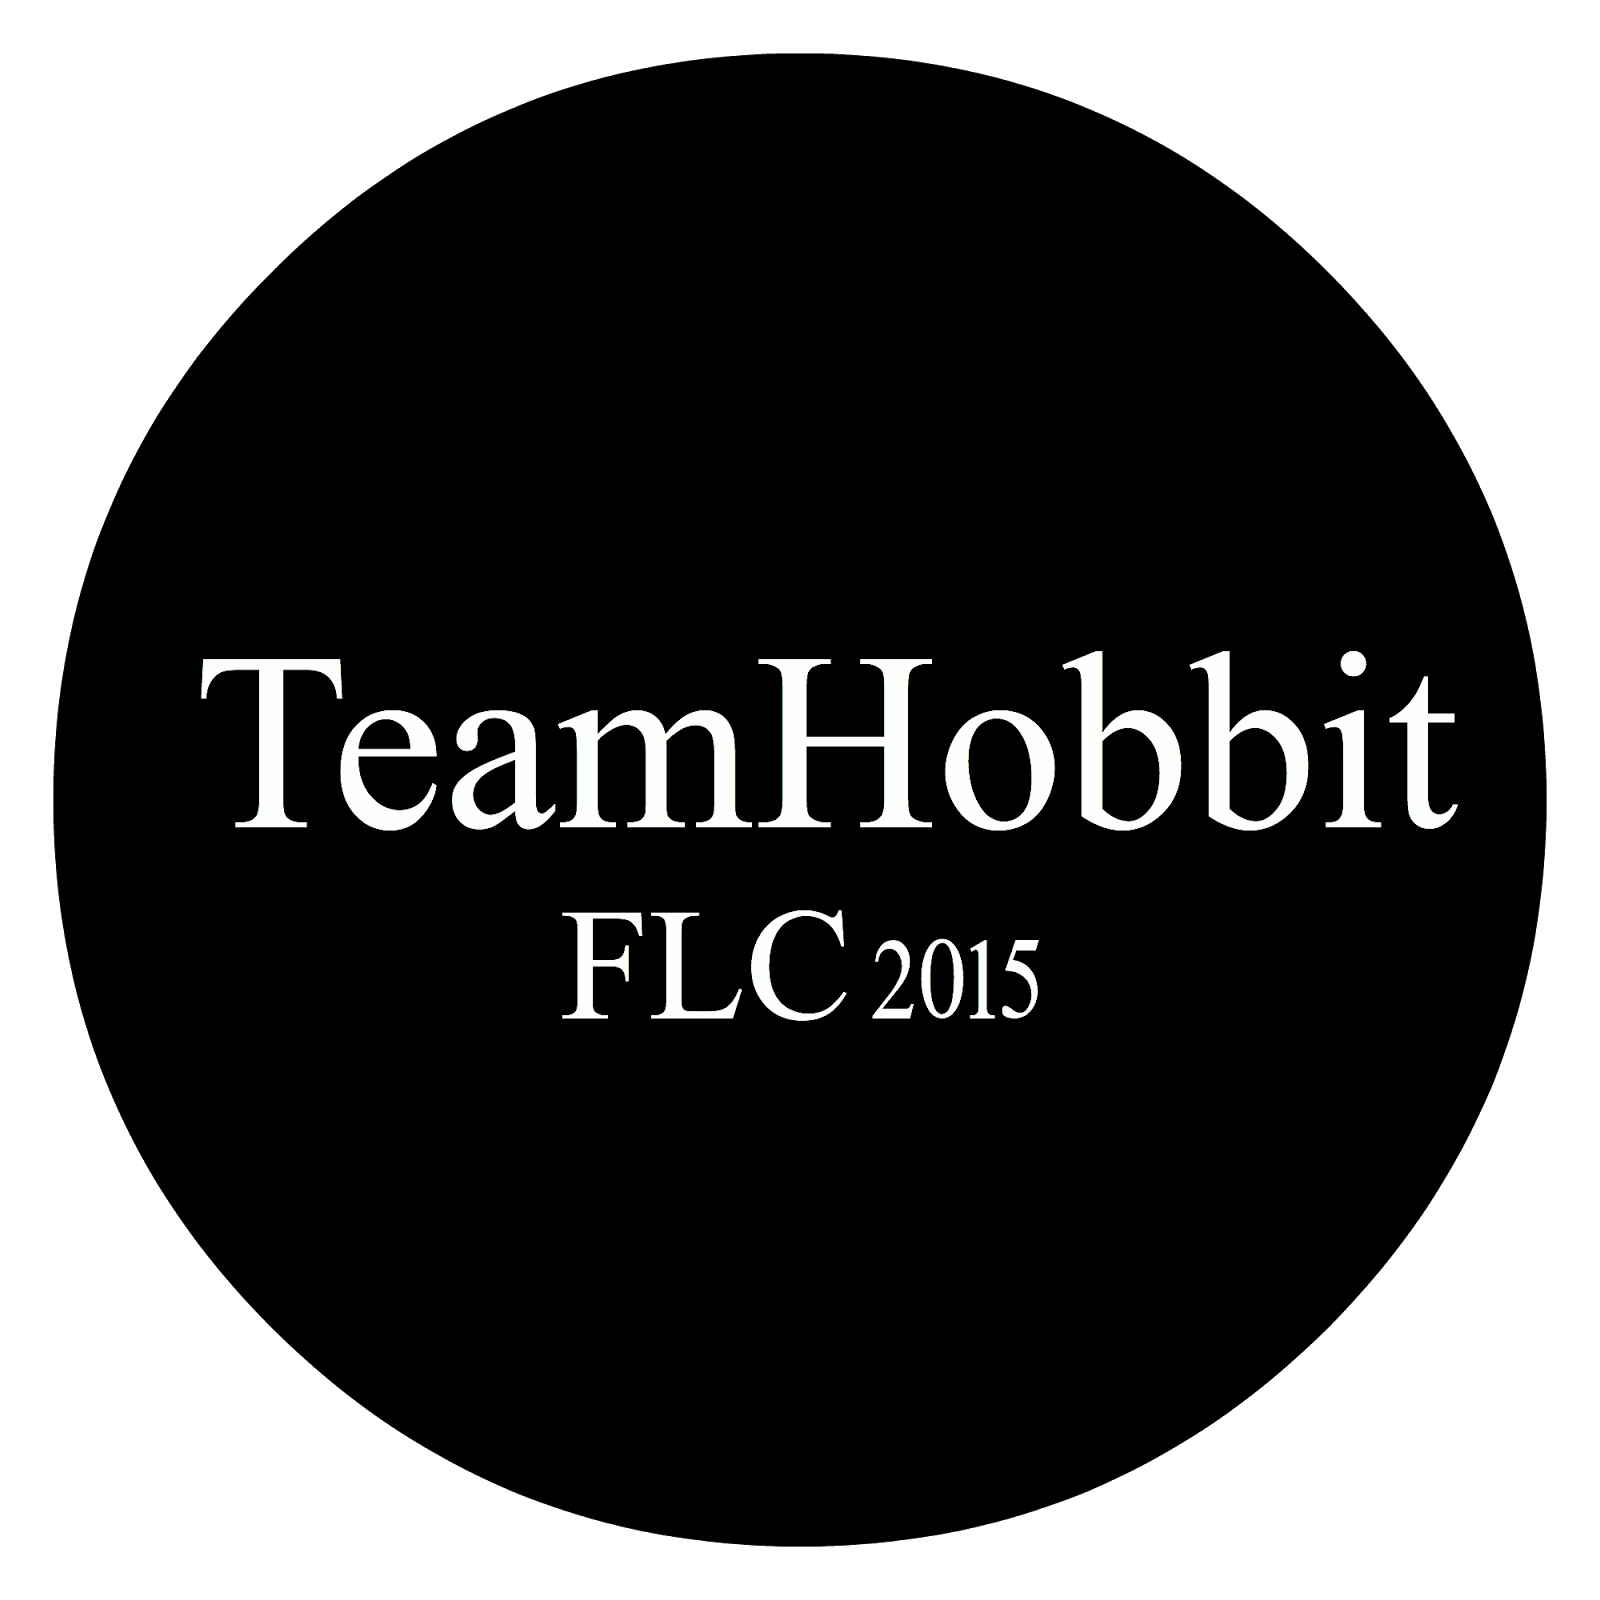 Team Hobbit